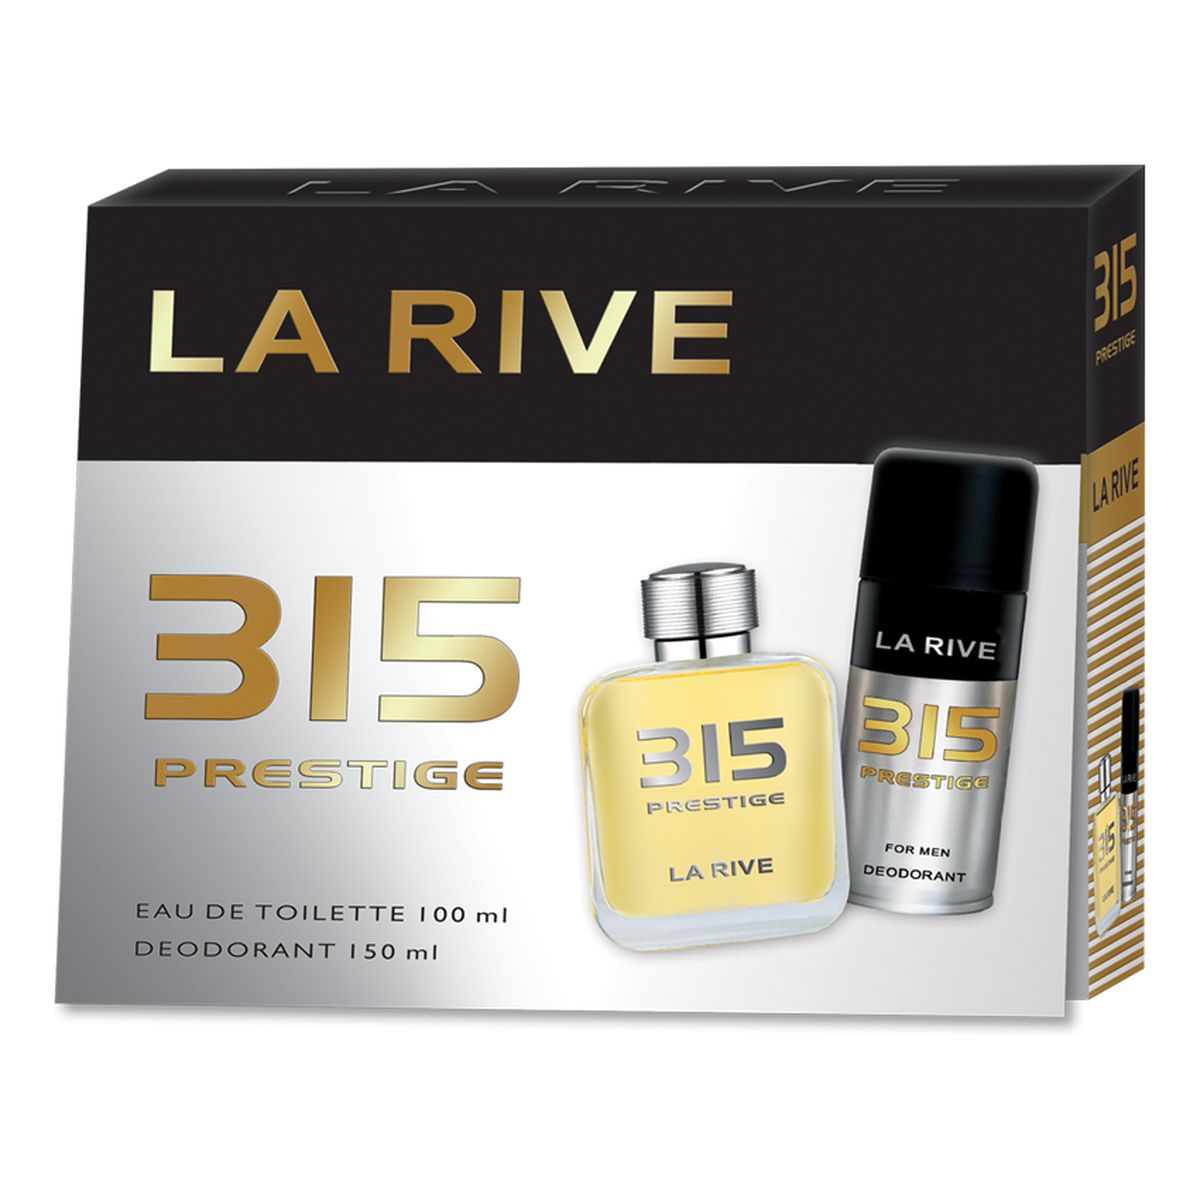 La Rive for Men 315 Prestige Zestaw prezentowy (woda toaletowa 100ml+dezodorant 150ml)